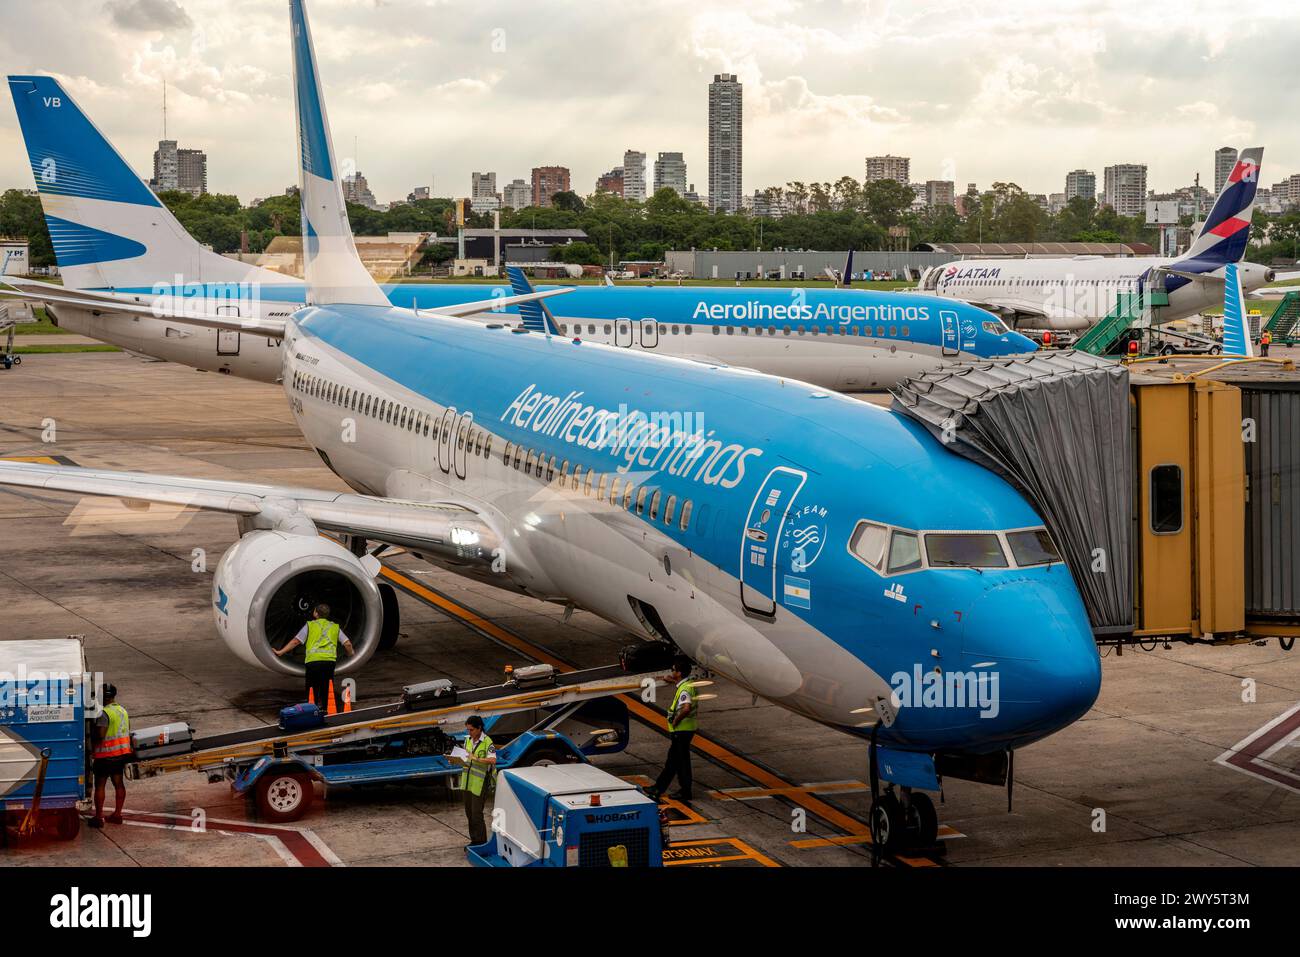 Aerolineas Argentina avions au sol à l'aéroport Jorge Newberry, Buenos Aires, Argentine Banque D'Images